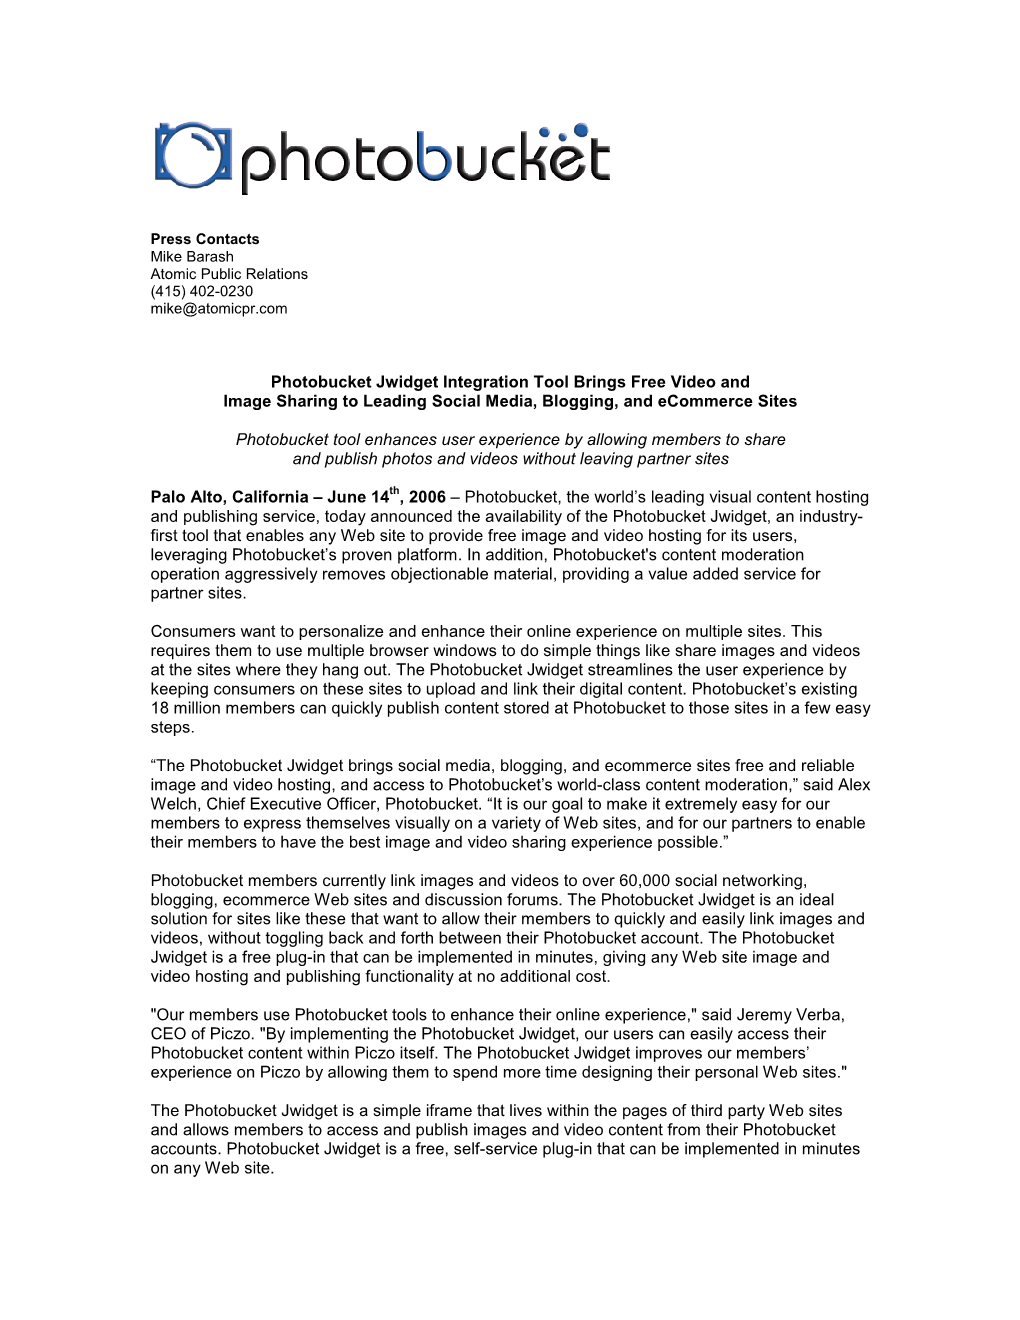 Photobucket Jwidget Press Release